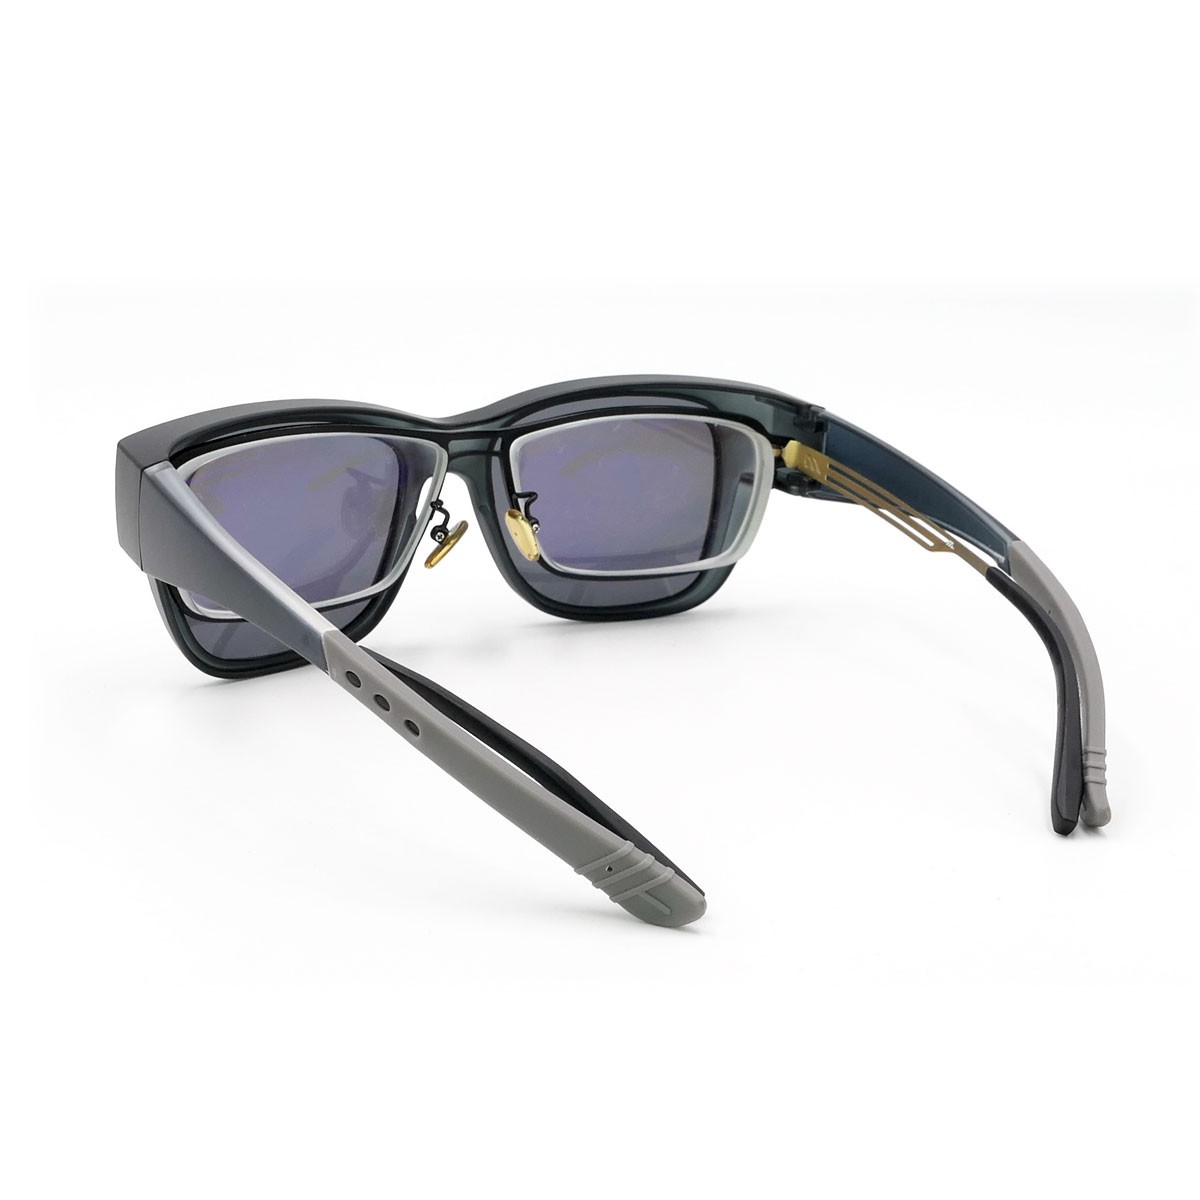 偏光套鏡，套鏡式偏光太陽眼鏡，近視眼鏡可直接配戴，提供客製化印字服務